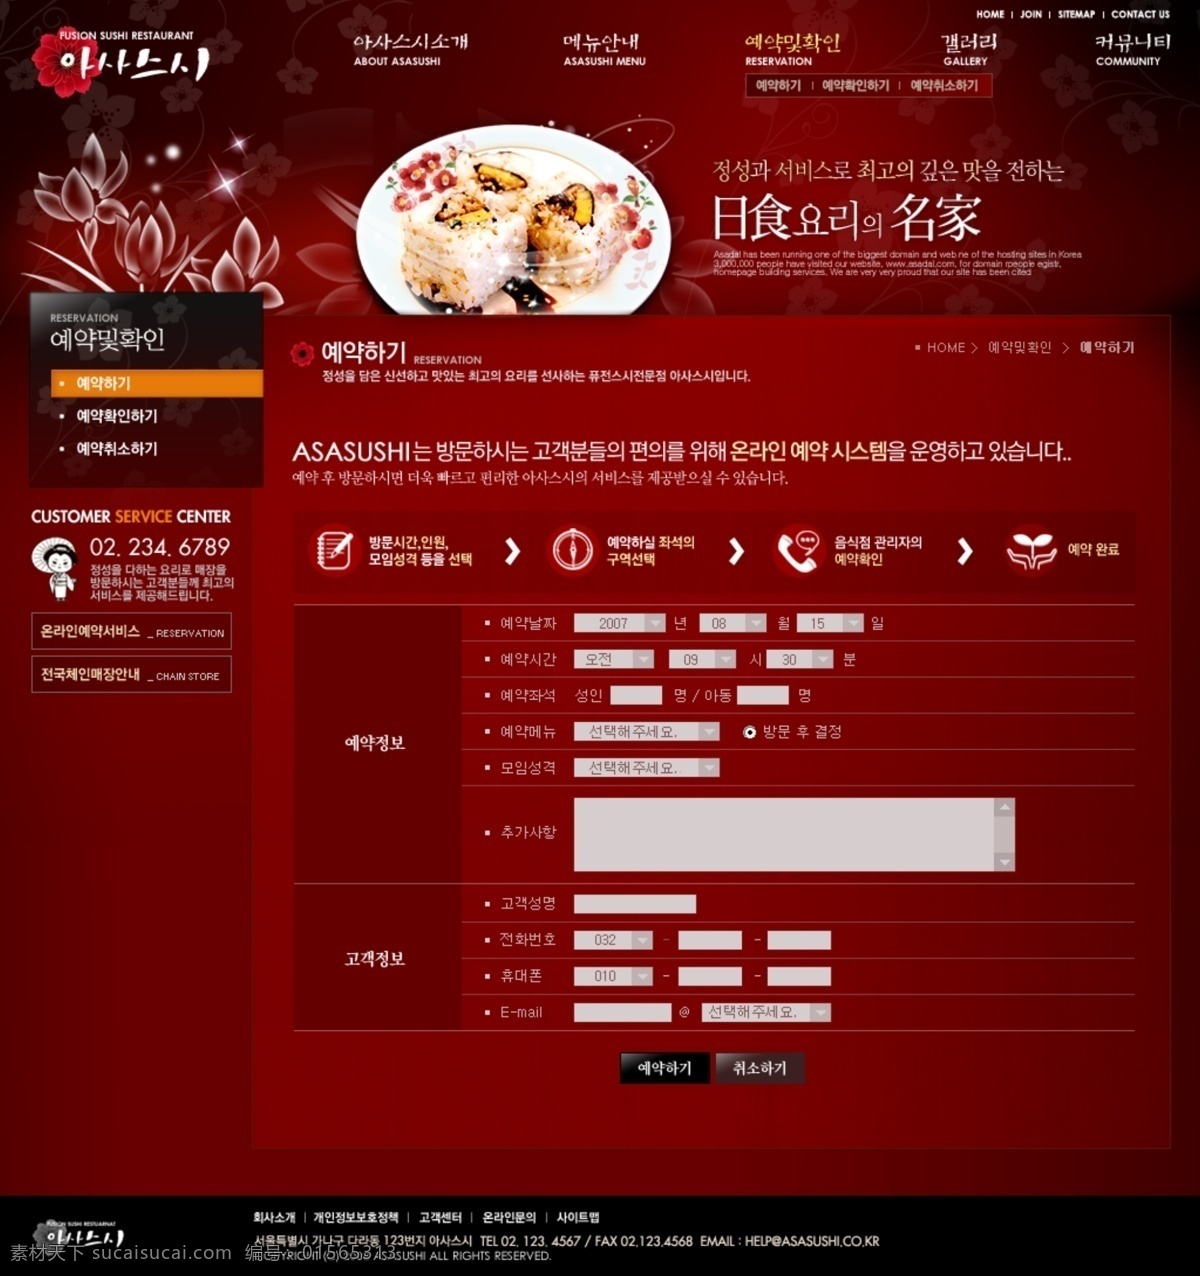 韩国 海鲜 料理 美食 餐饮 网页 红色 模板 海鲜料理 web 界面设计 韩文模板 网页素材 其他网页素材